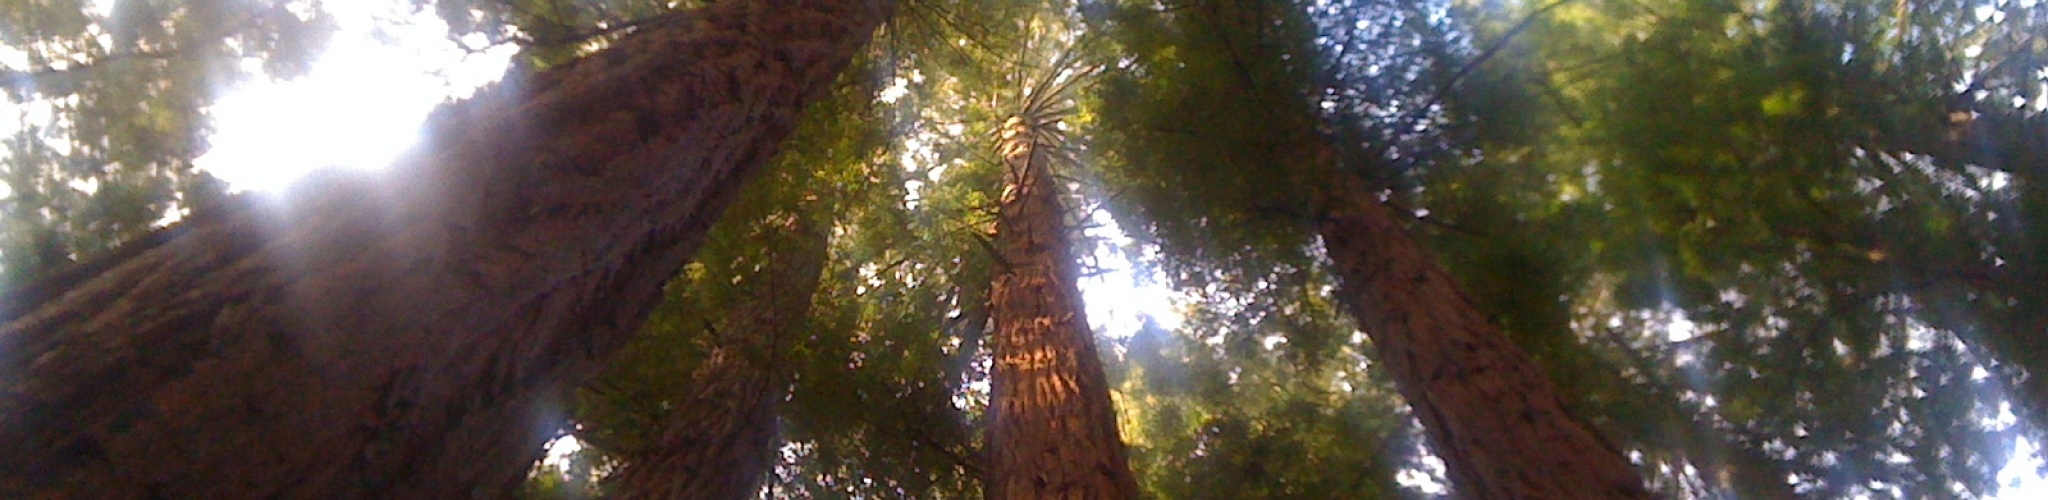 Redwood_Banner.jpg